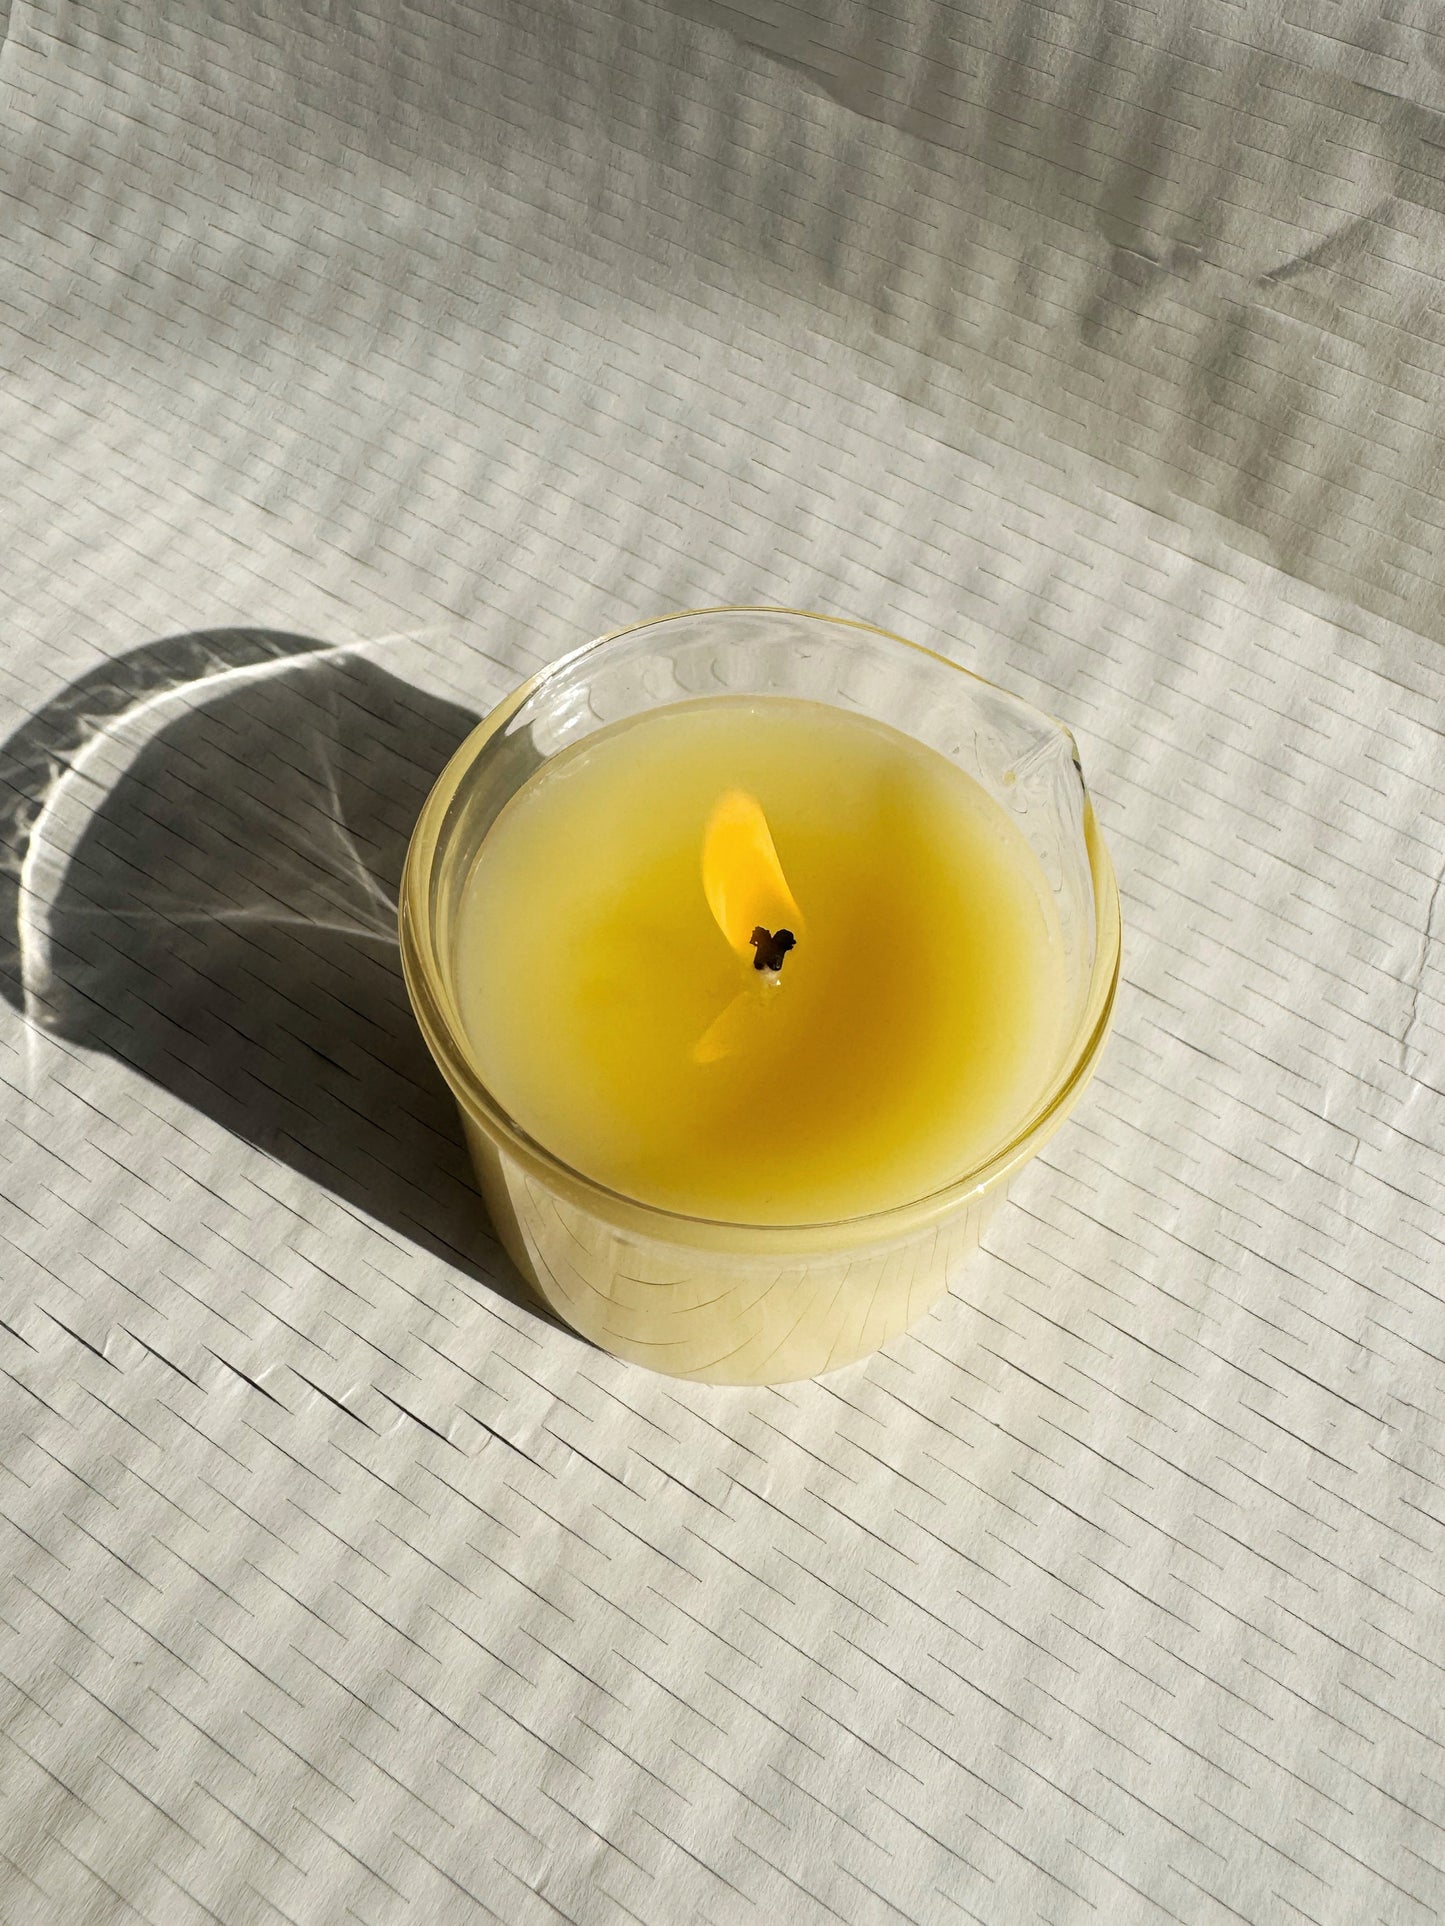 A burning massage candle